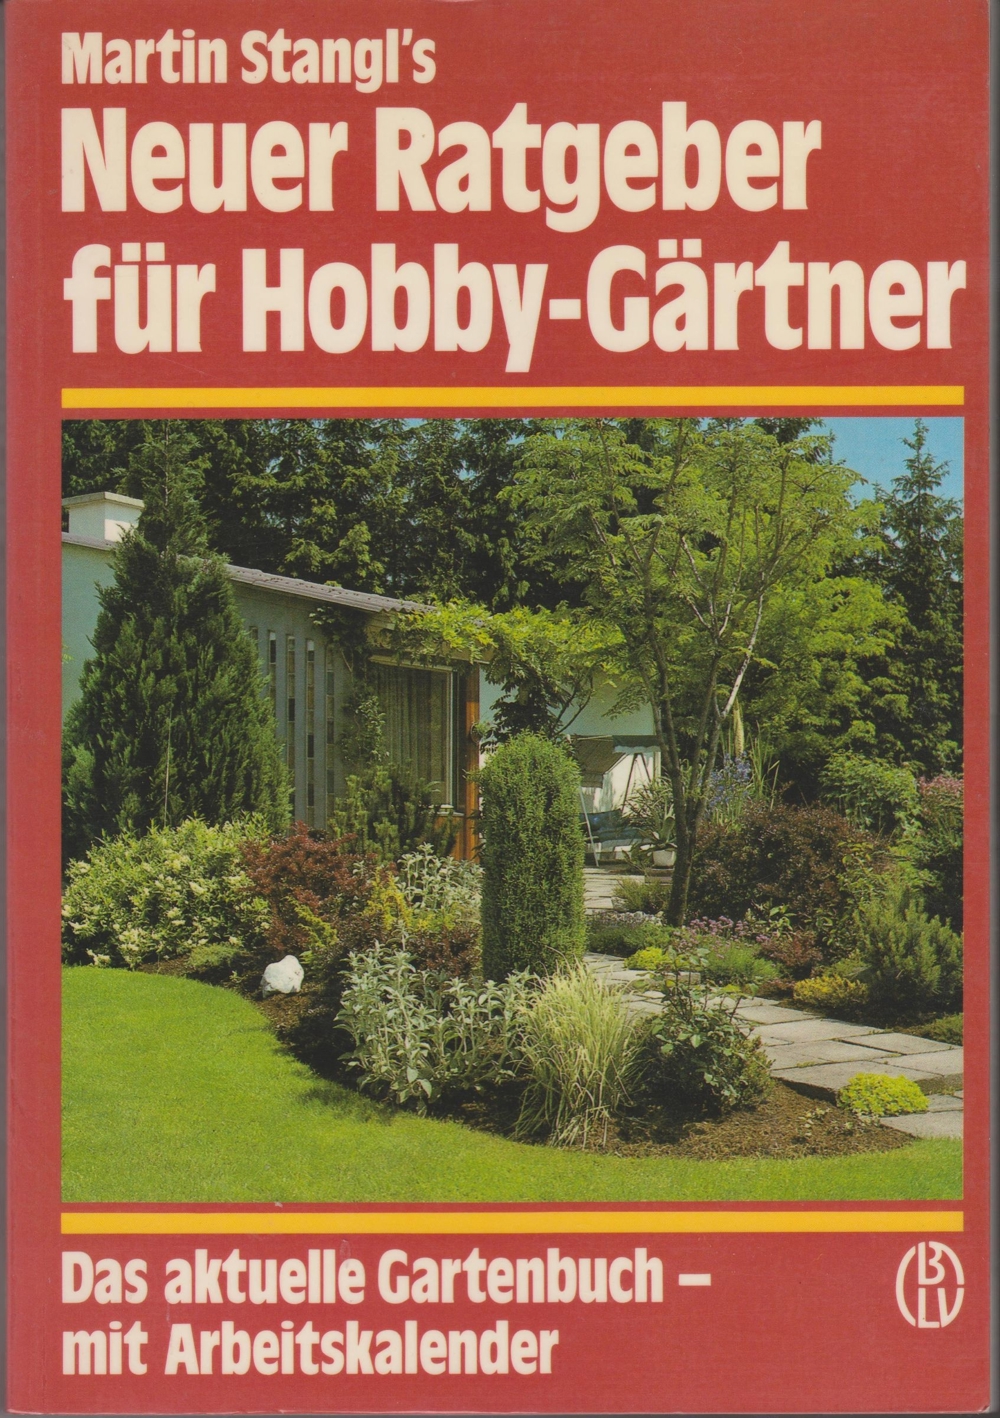 Hobby-Gärtner Ratgeber Buch